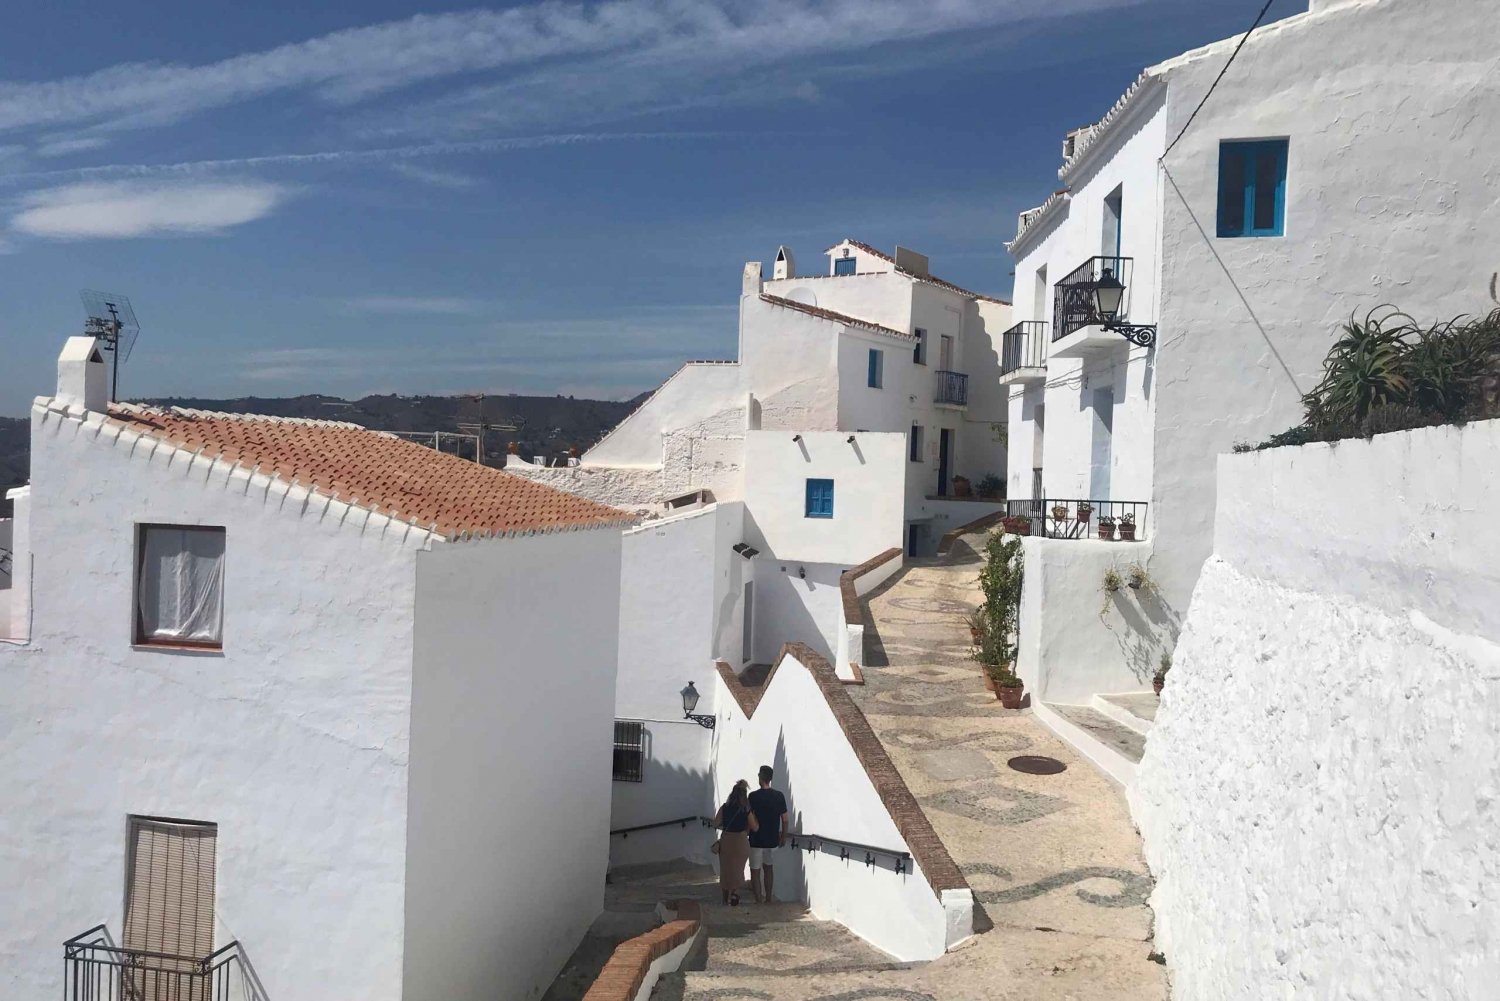 Nerja: escursione privata di un giorno a Nerja e Frigiliana da Malaga